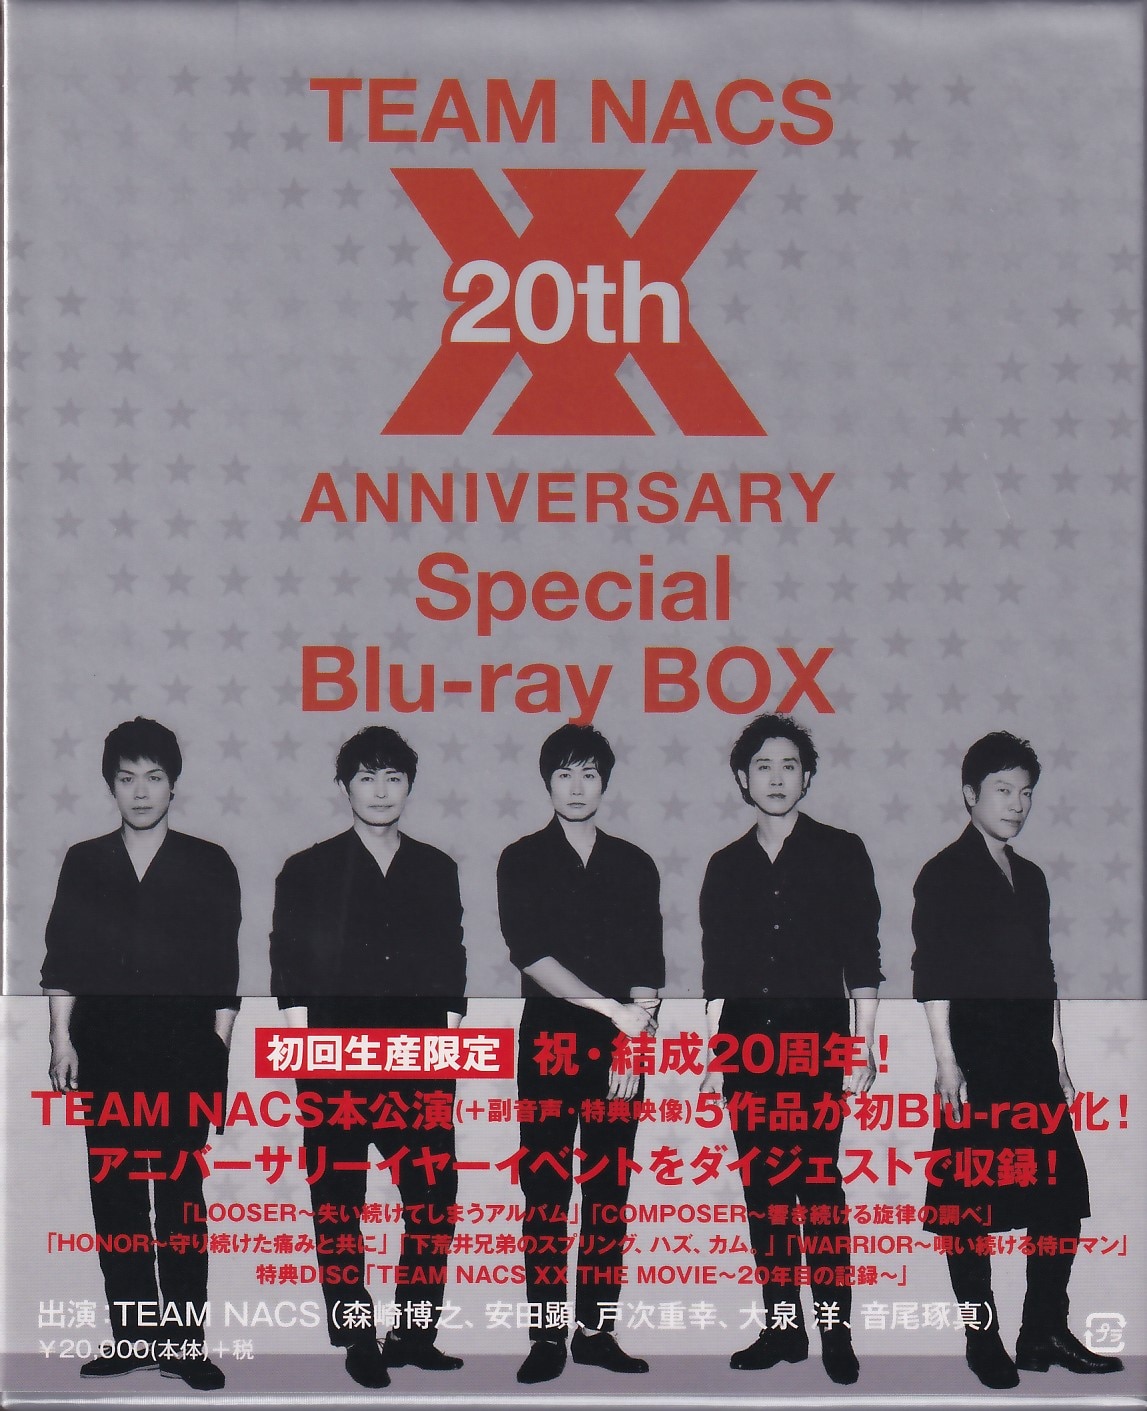 チームナックス☆TEAM NACS☆20th ANNIVERSARY Special Blu-ray BOX☆ブルーレイ☆20周年☆スぺシャル -  ブルーレイ